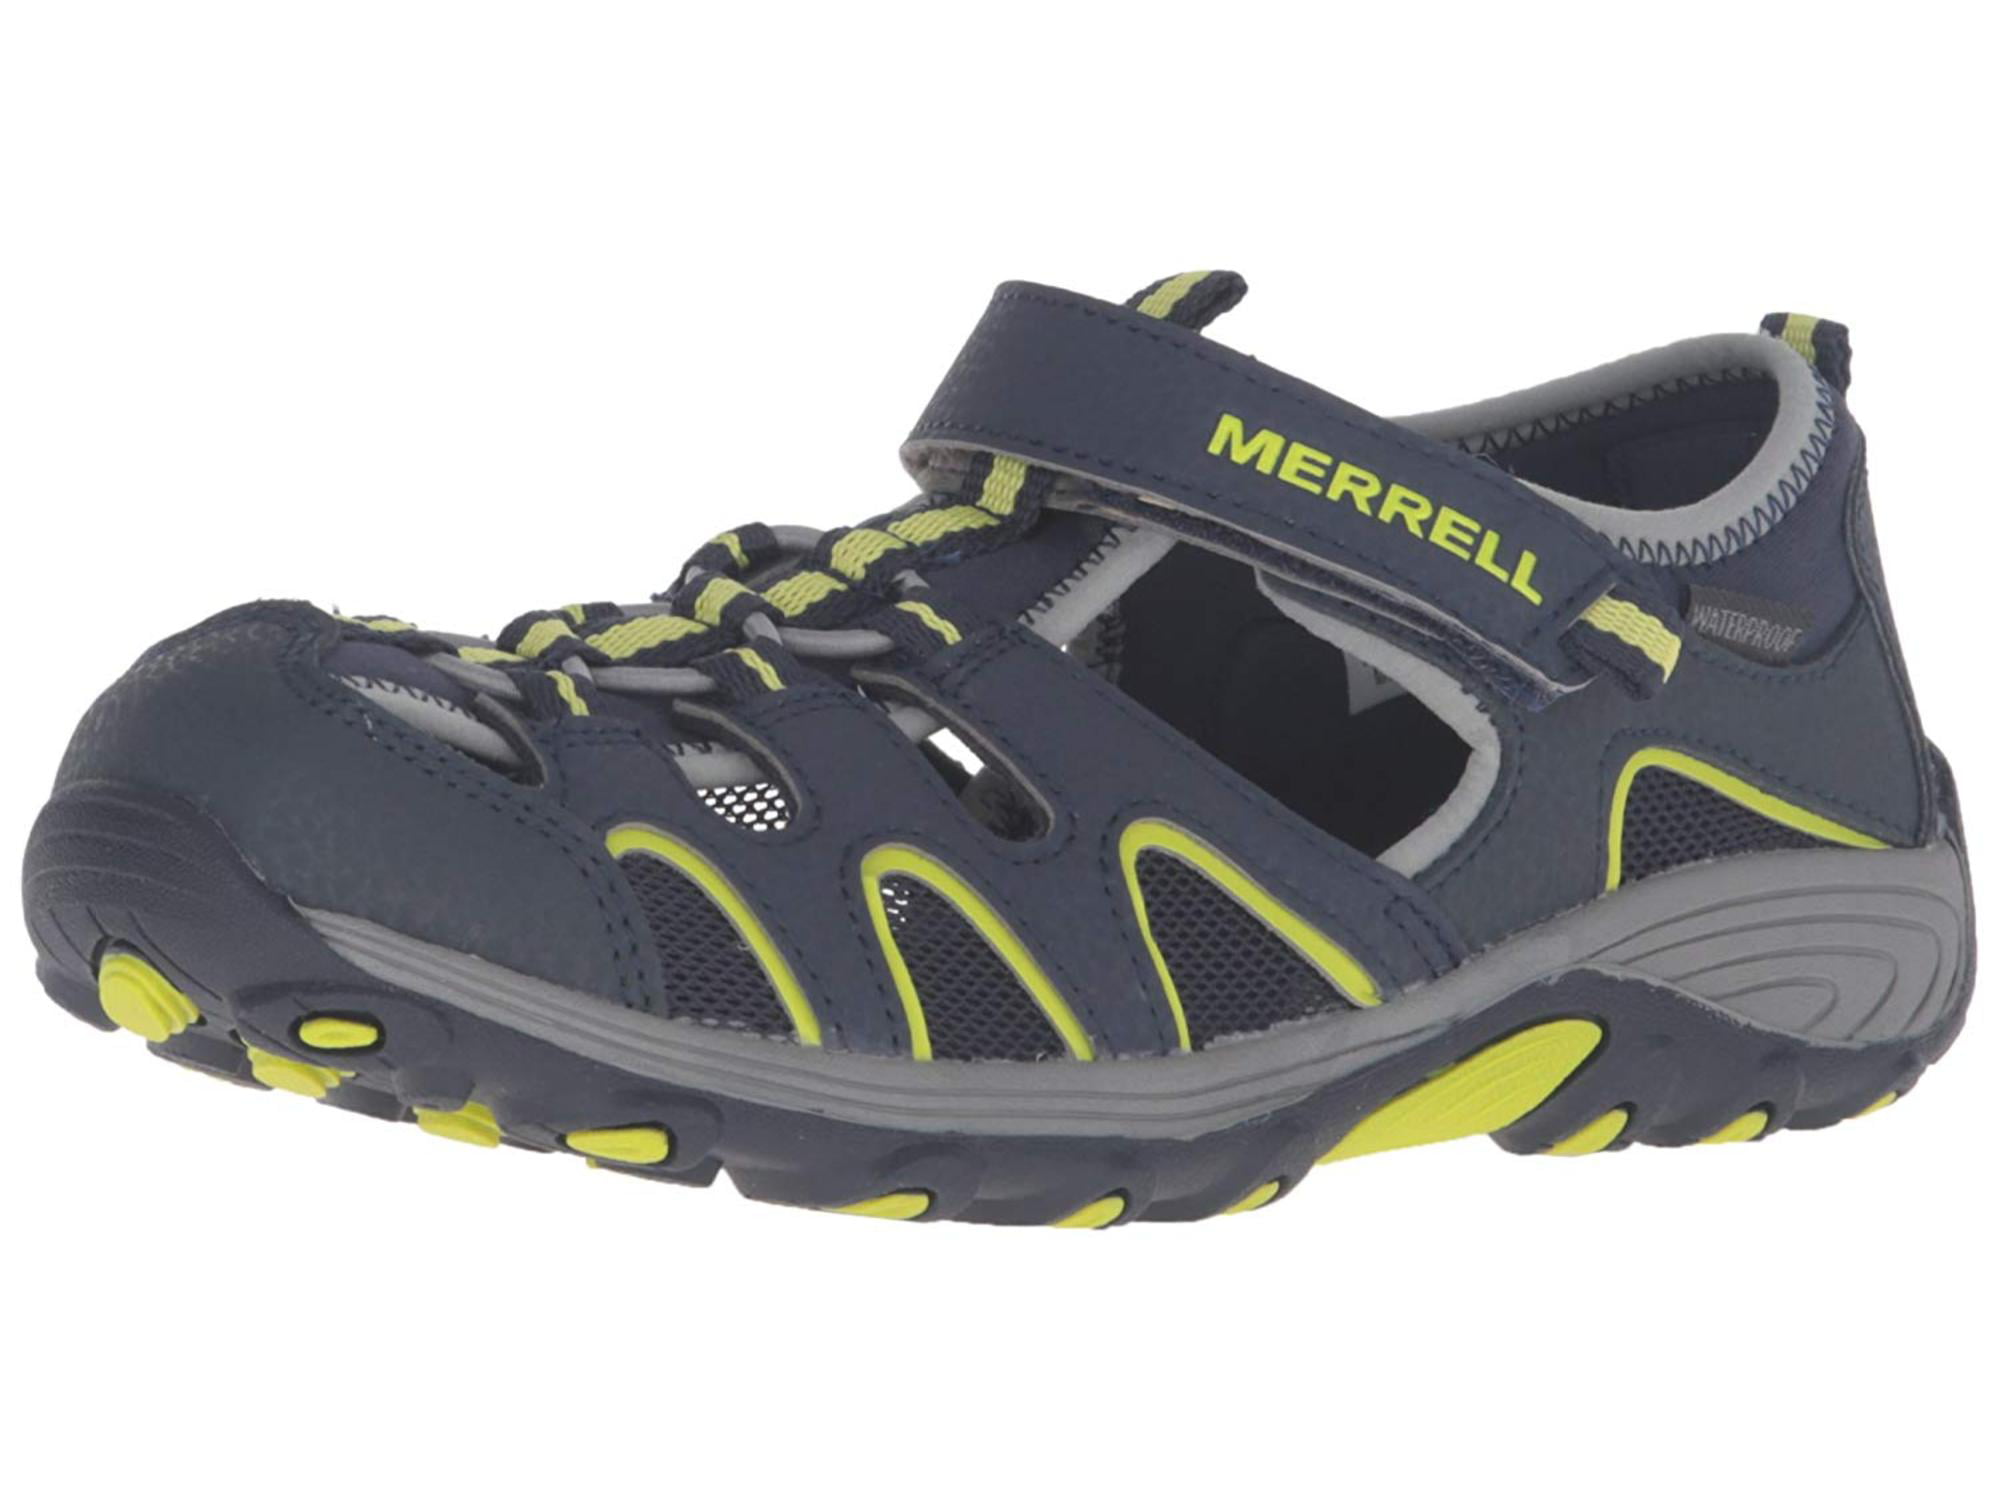 Merrell Kid's Hydro H2O Hiker Sandal Sport